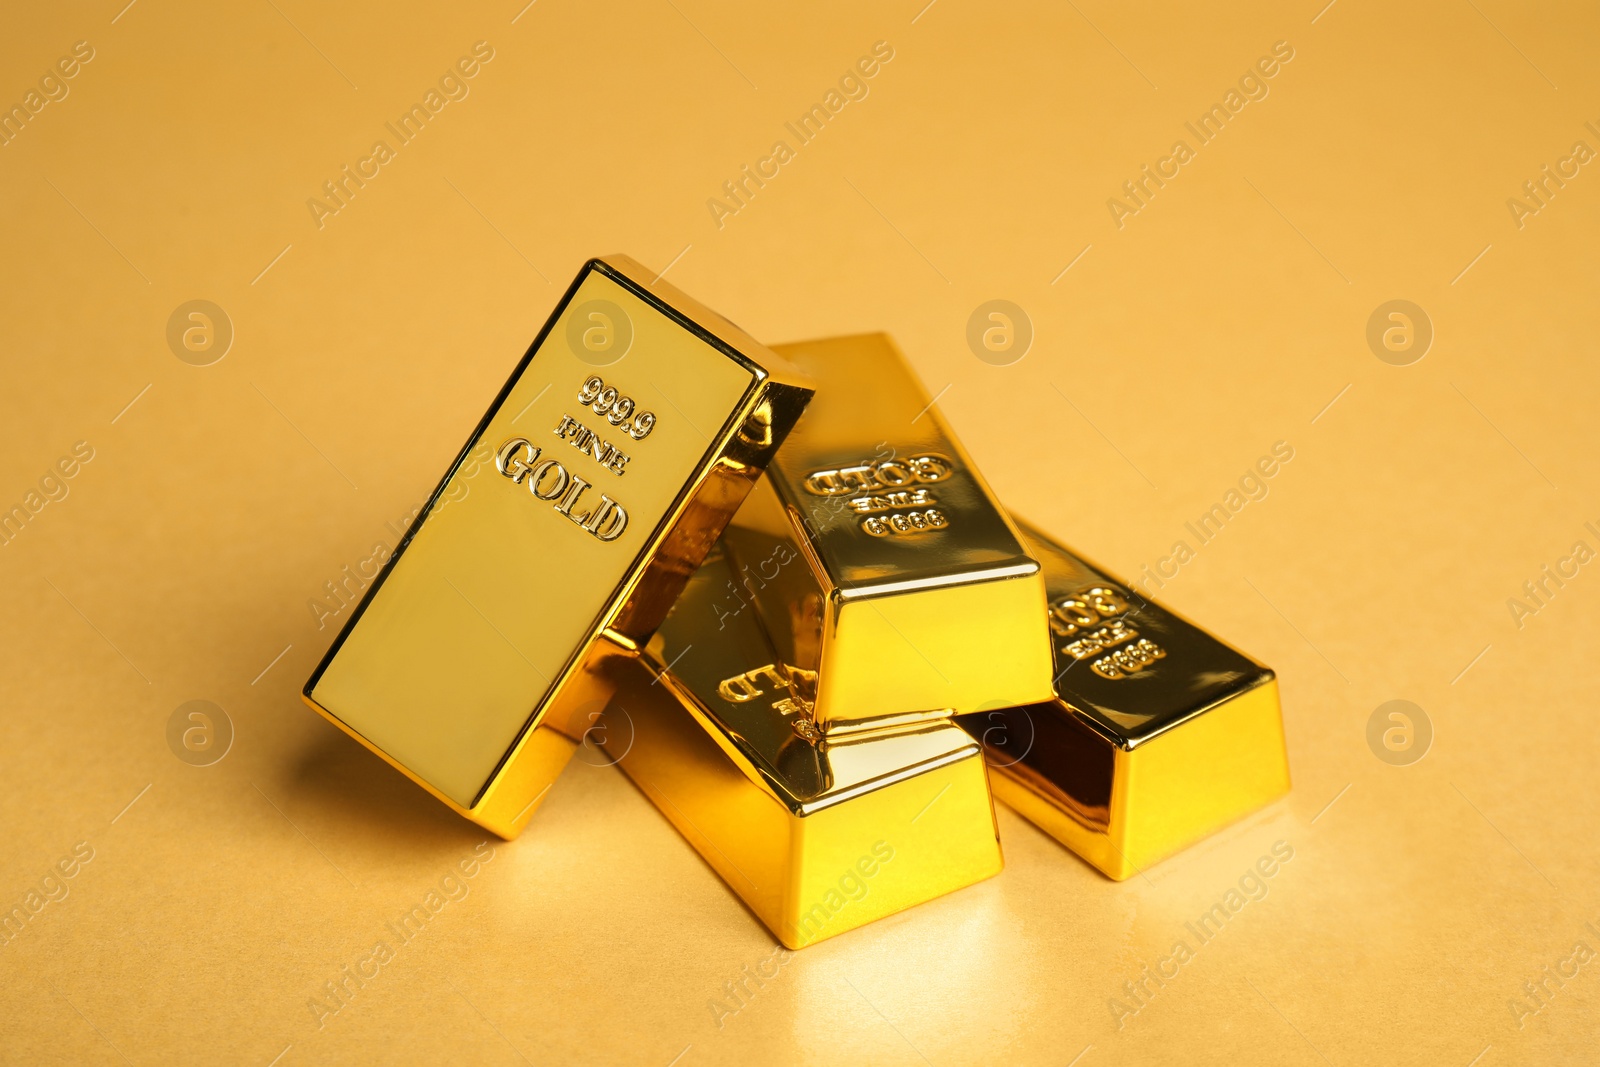 Photo of Many shiny gold bars on pale orange background